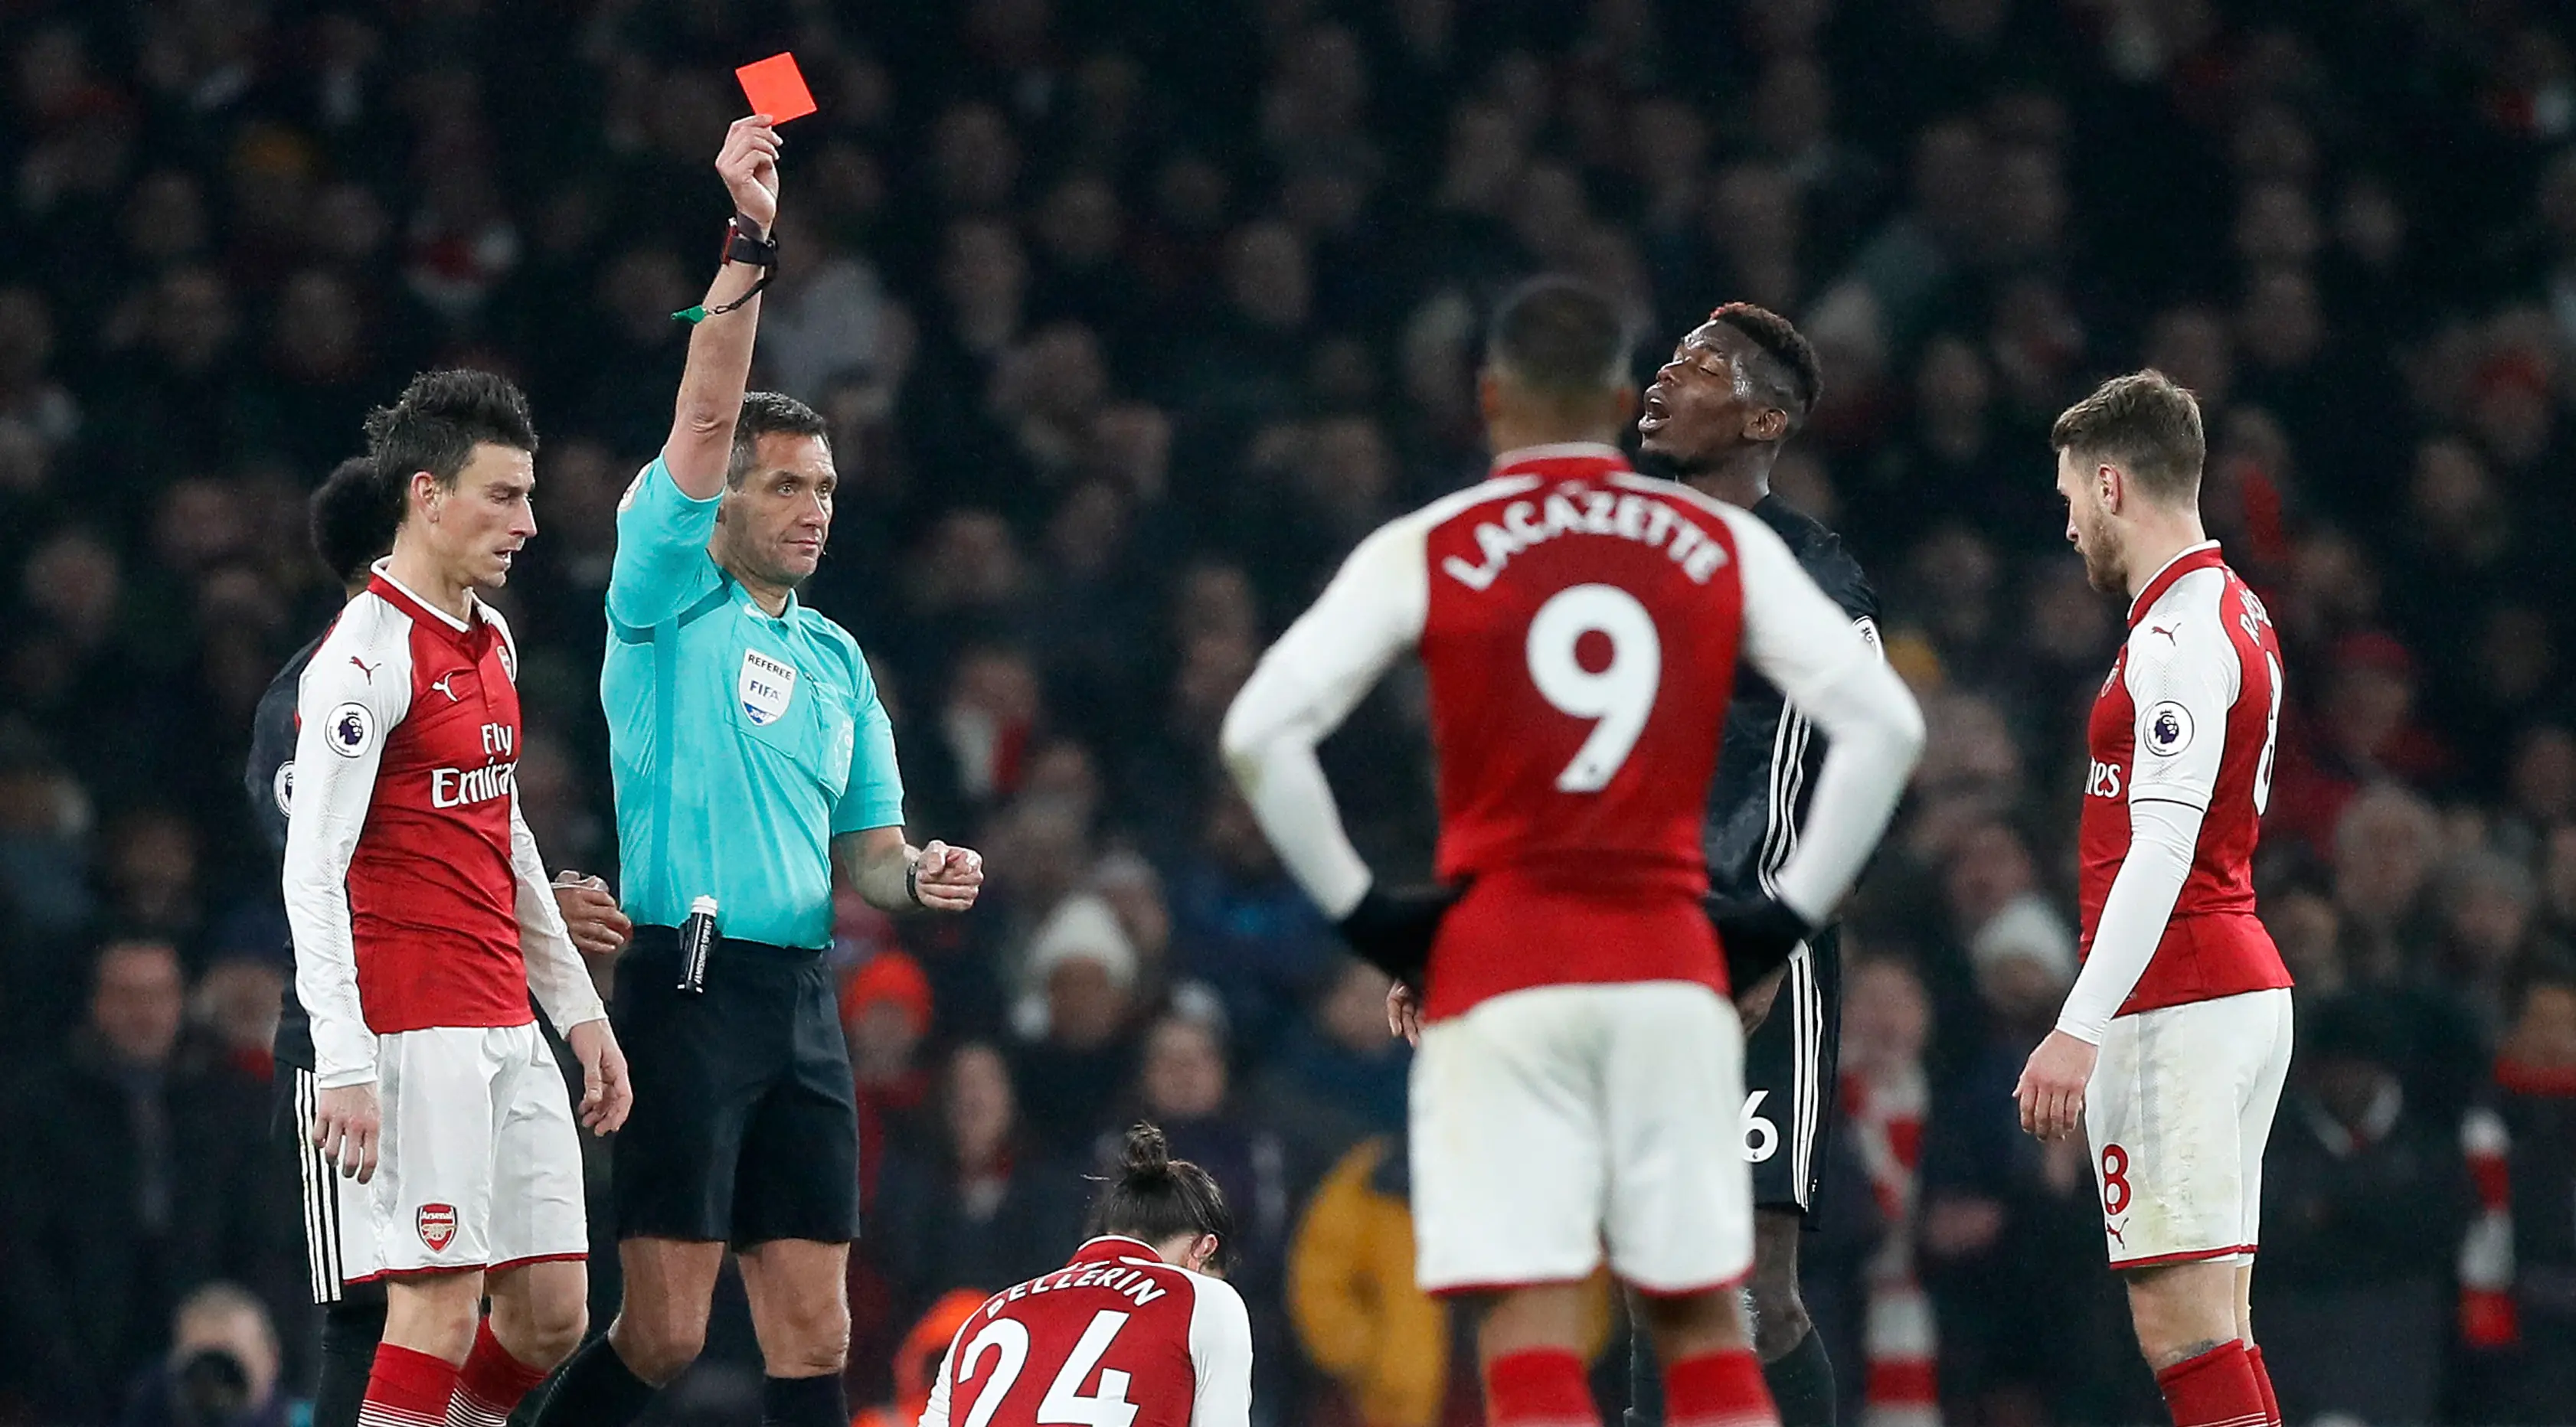 Wasit Andre Marriner memberikan kartu merah kepada pemain Manchester United Paul Pogba pada laga melawan Arsenal. (AP Photo/Kirsty Wigglesworth)